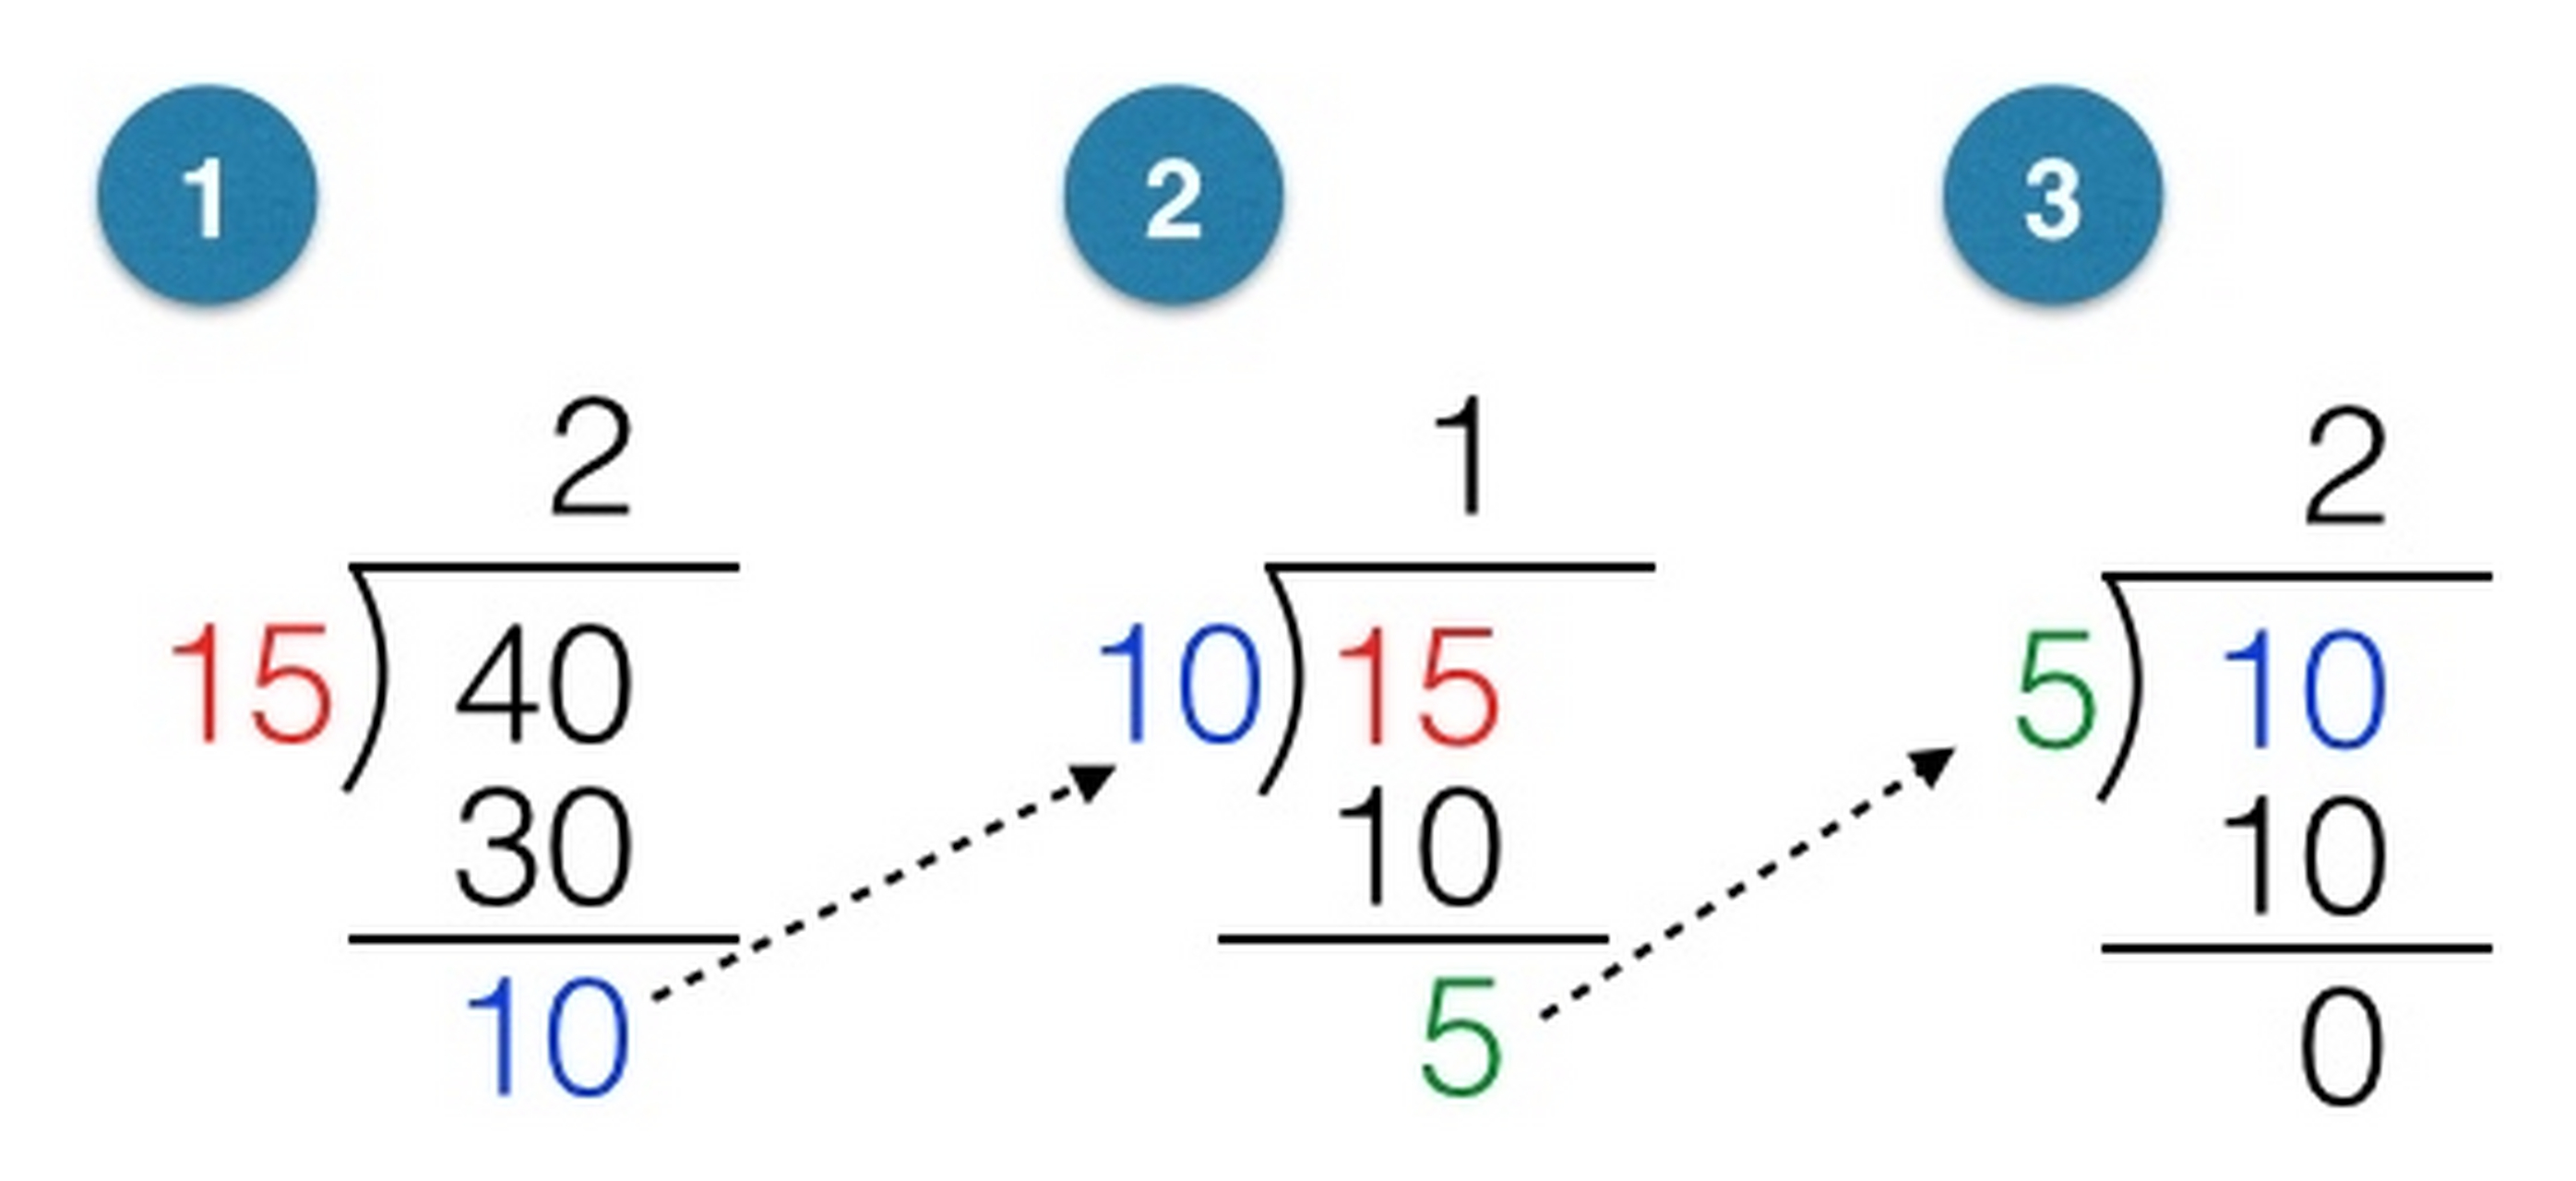 欧几里得算法是一个古老而重要的算法,用于计算两个正整数的最大公约